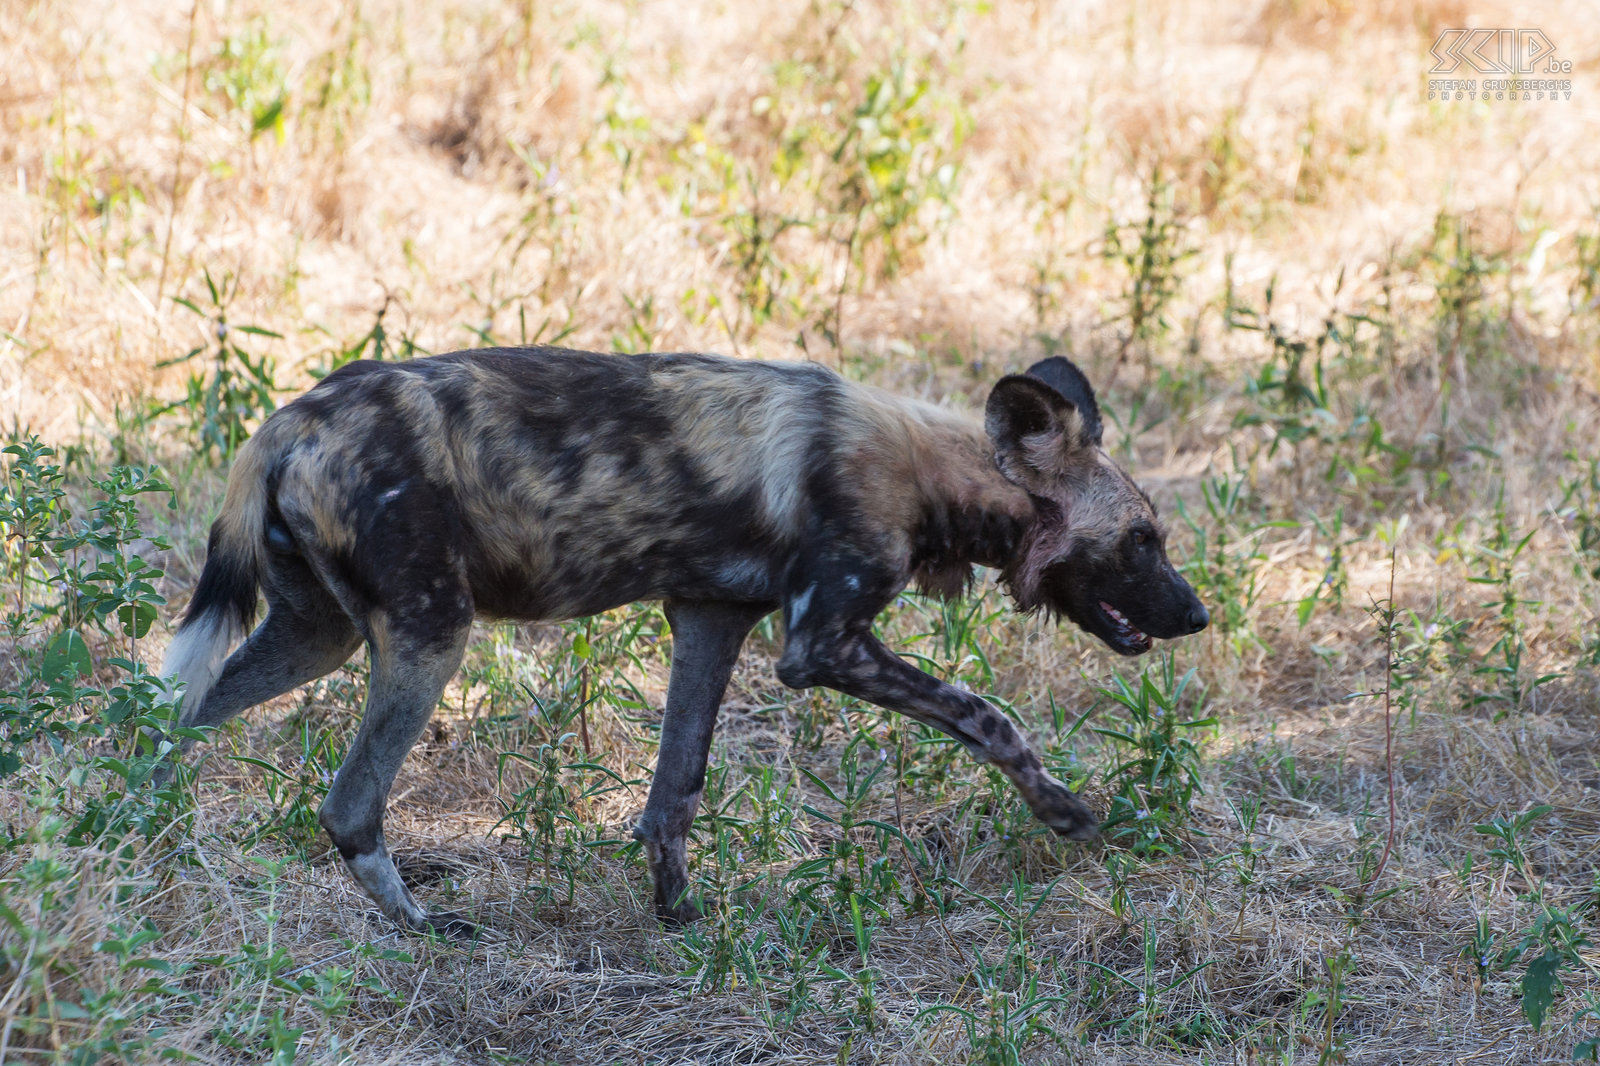 South Luangwa - Wilde hond Tijdens onze 5 dagen safari in South Luangwa kwamen we ook meerdere keren een roedel van Afrikaanse wilde honden (African wild dog, Lycaon pictus) tegen. Het is een bedreigde diersoort die enorme afstanden kan reizen.  Stefan Cruysberghs